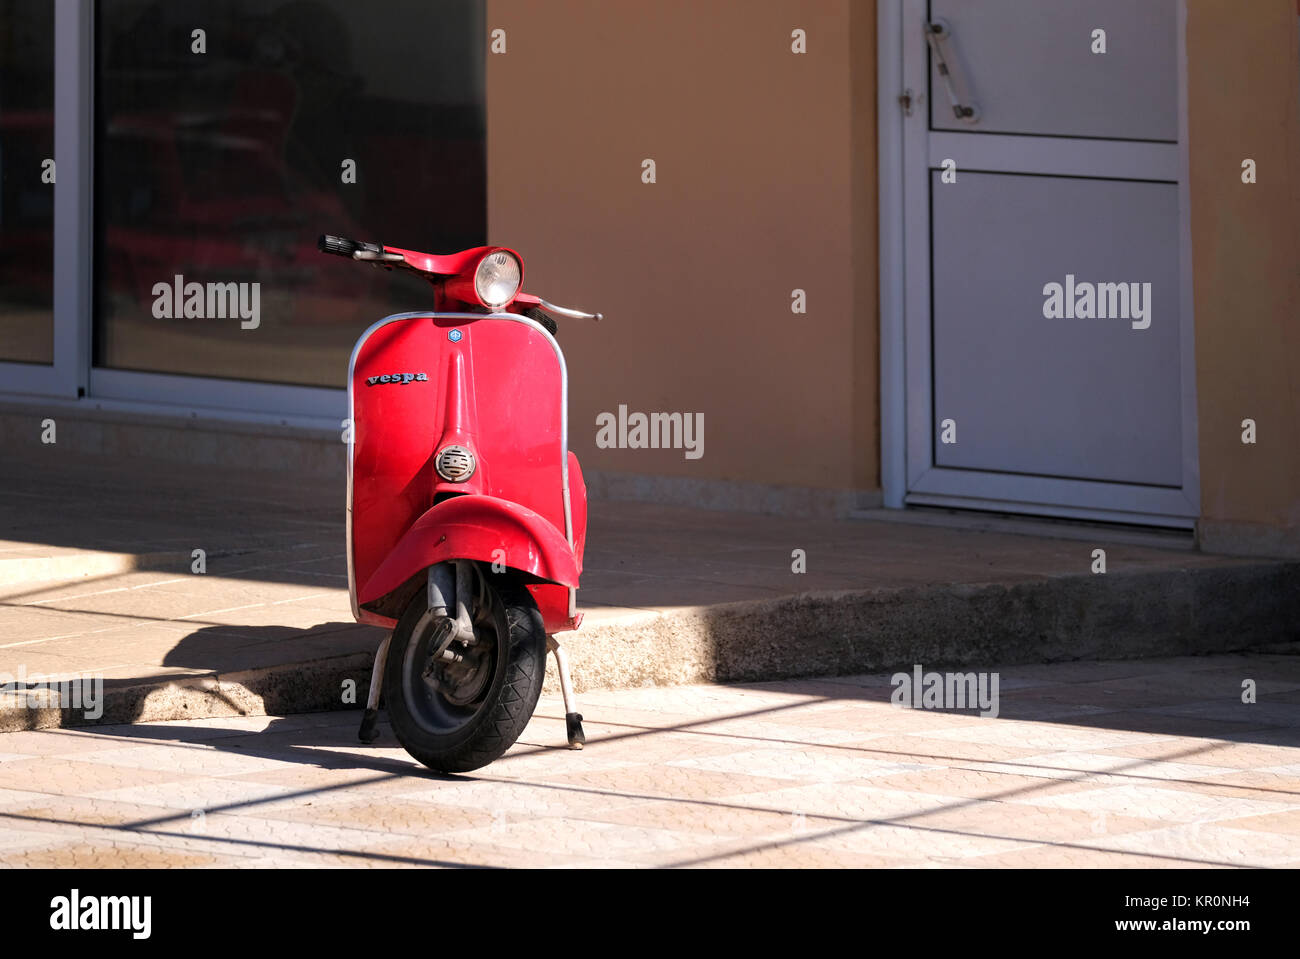 Eine alte rote Vespa Roller auf einem Stand auf der Straße geparkt. Trotz seines Alters der Roller in gutem Zustand und in hellen Sonnenlicht zeigt seine rote Farbe Stockfoto